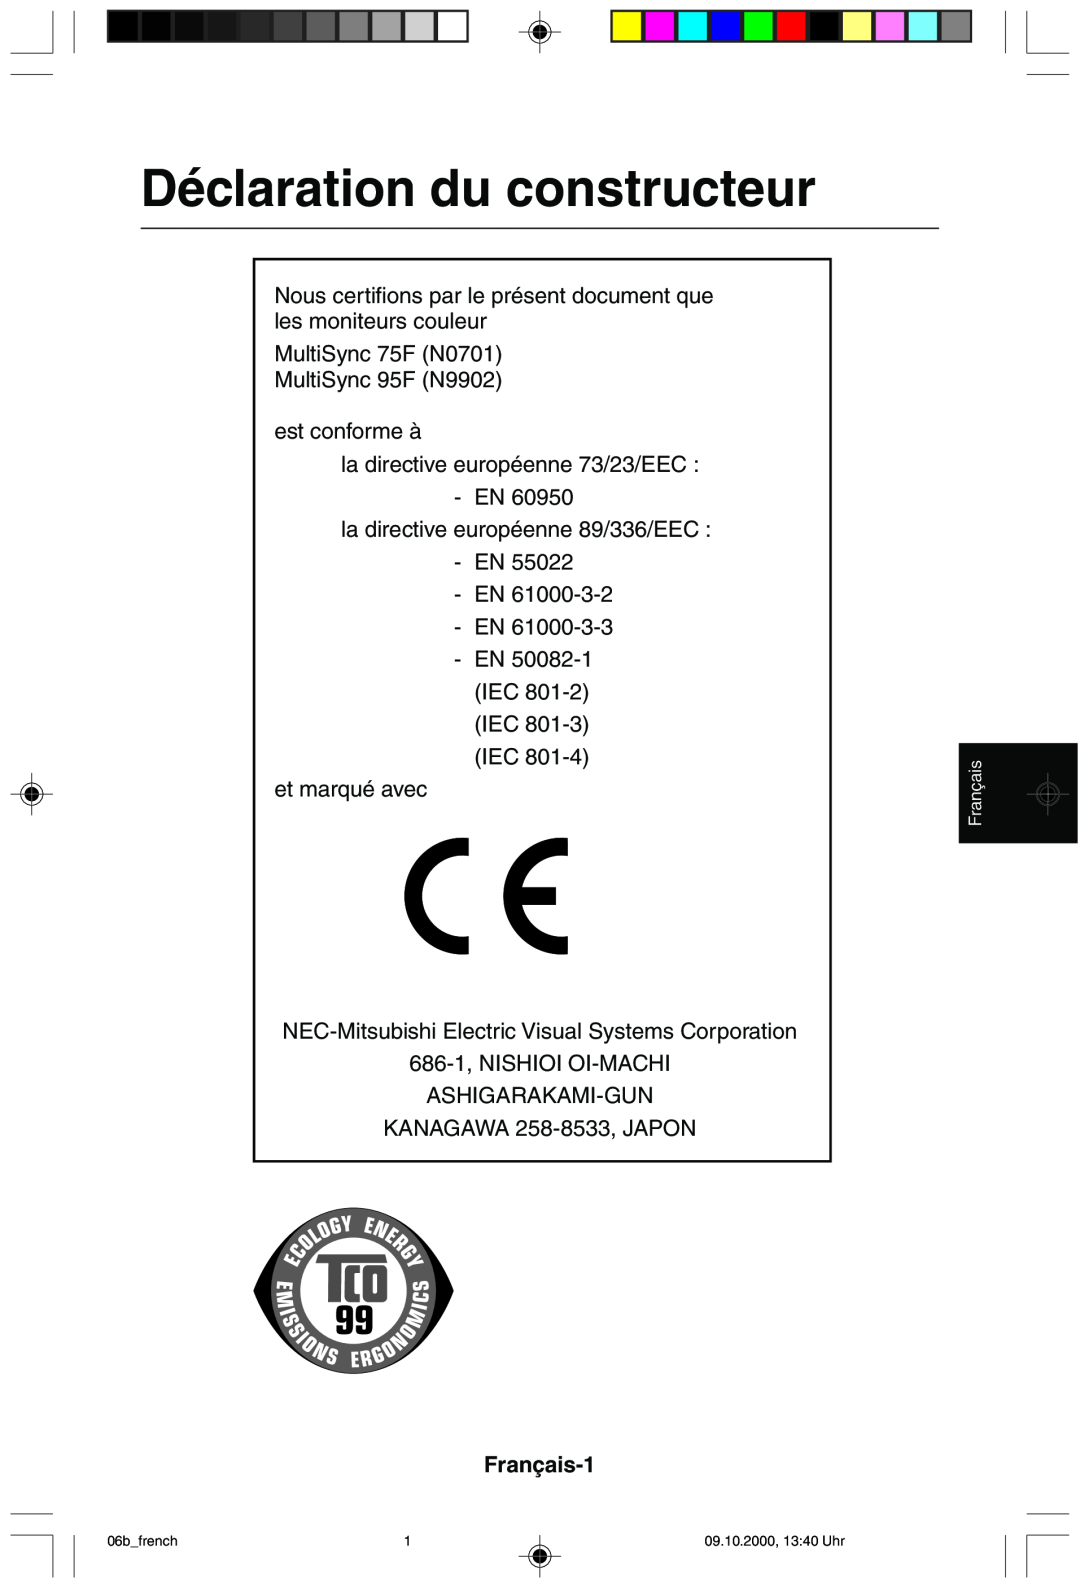 NEC 95F user manual Déclaration du constructeur, Français-1 